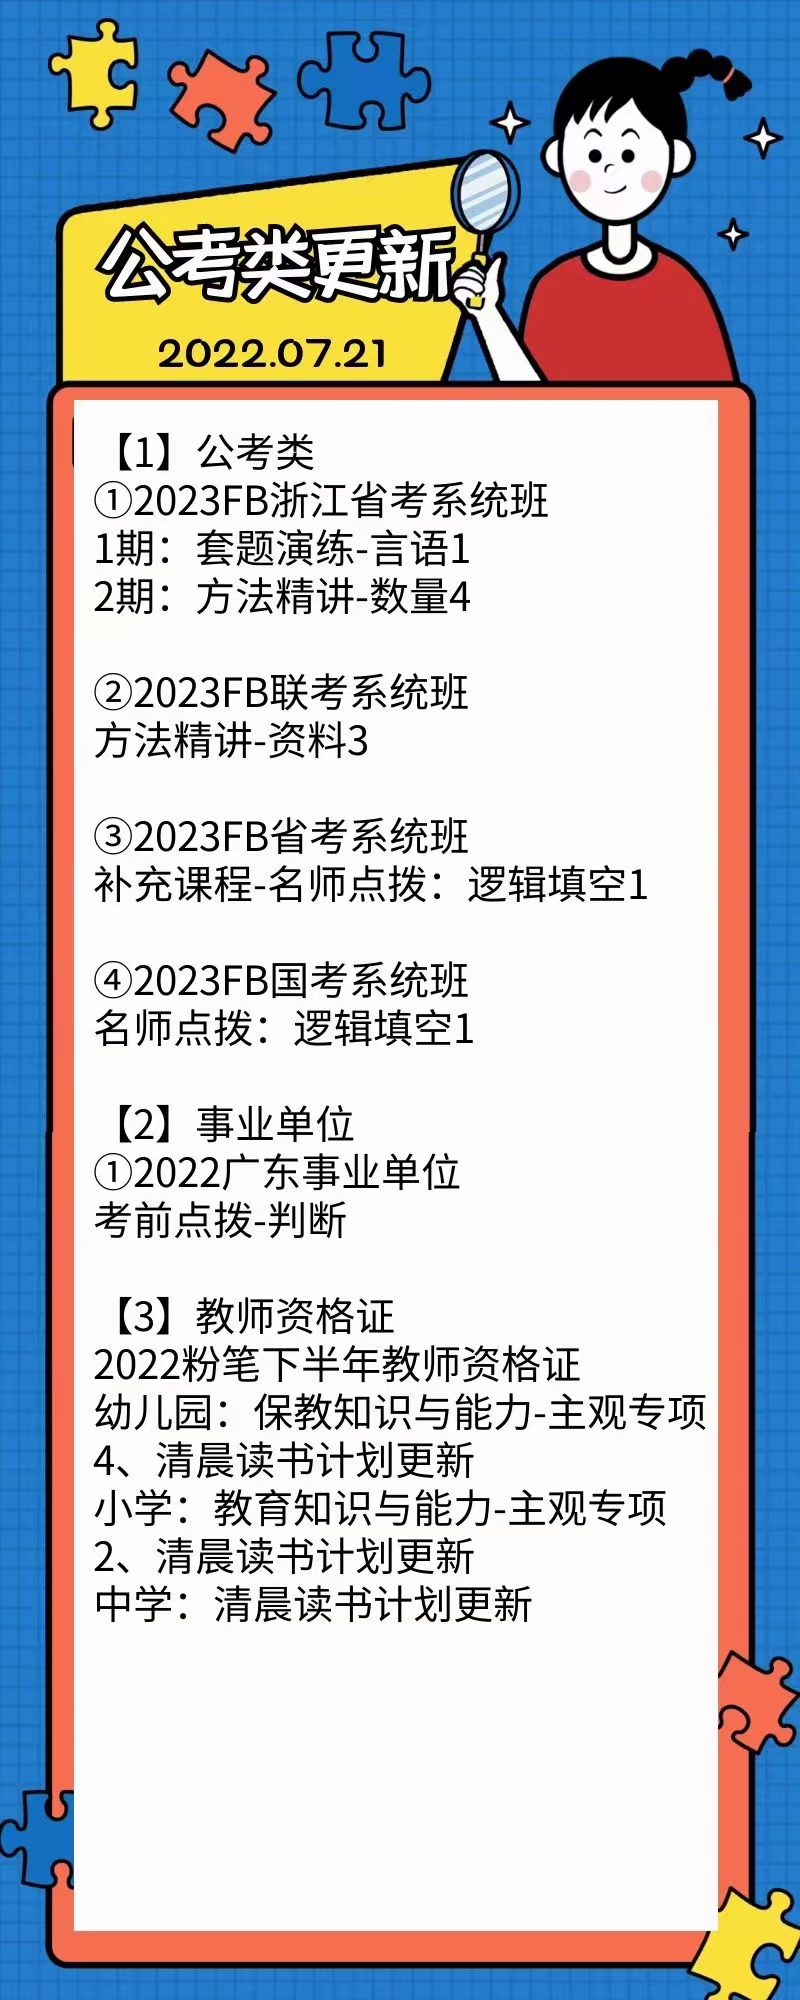 萌学院区07月21号更新 公务员 事业单位2022 教师招聘